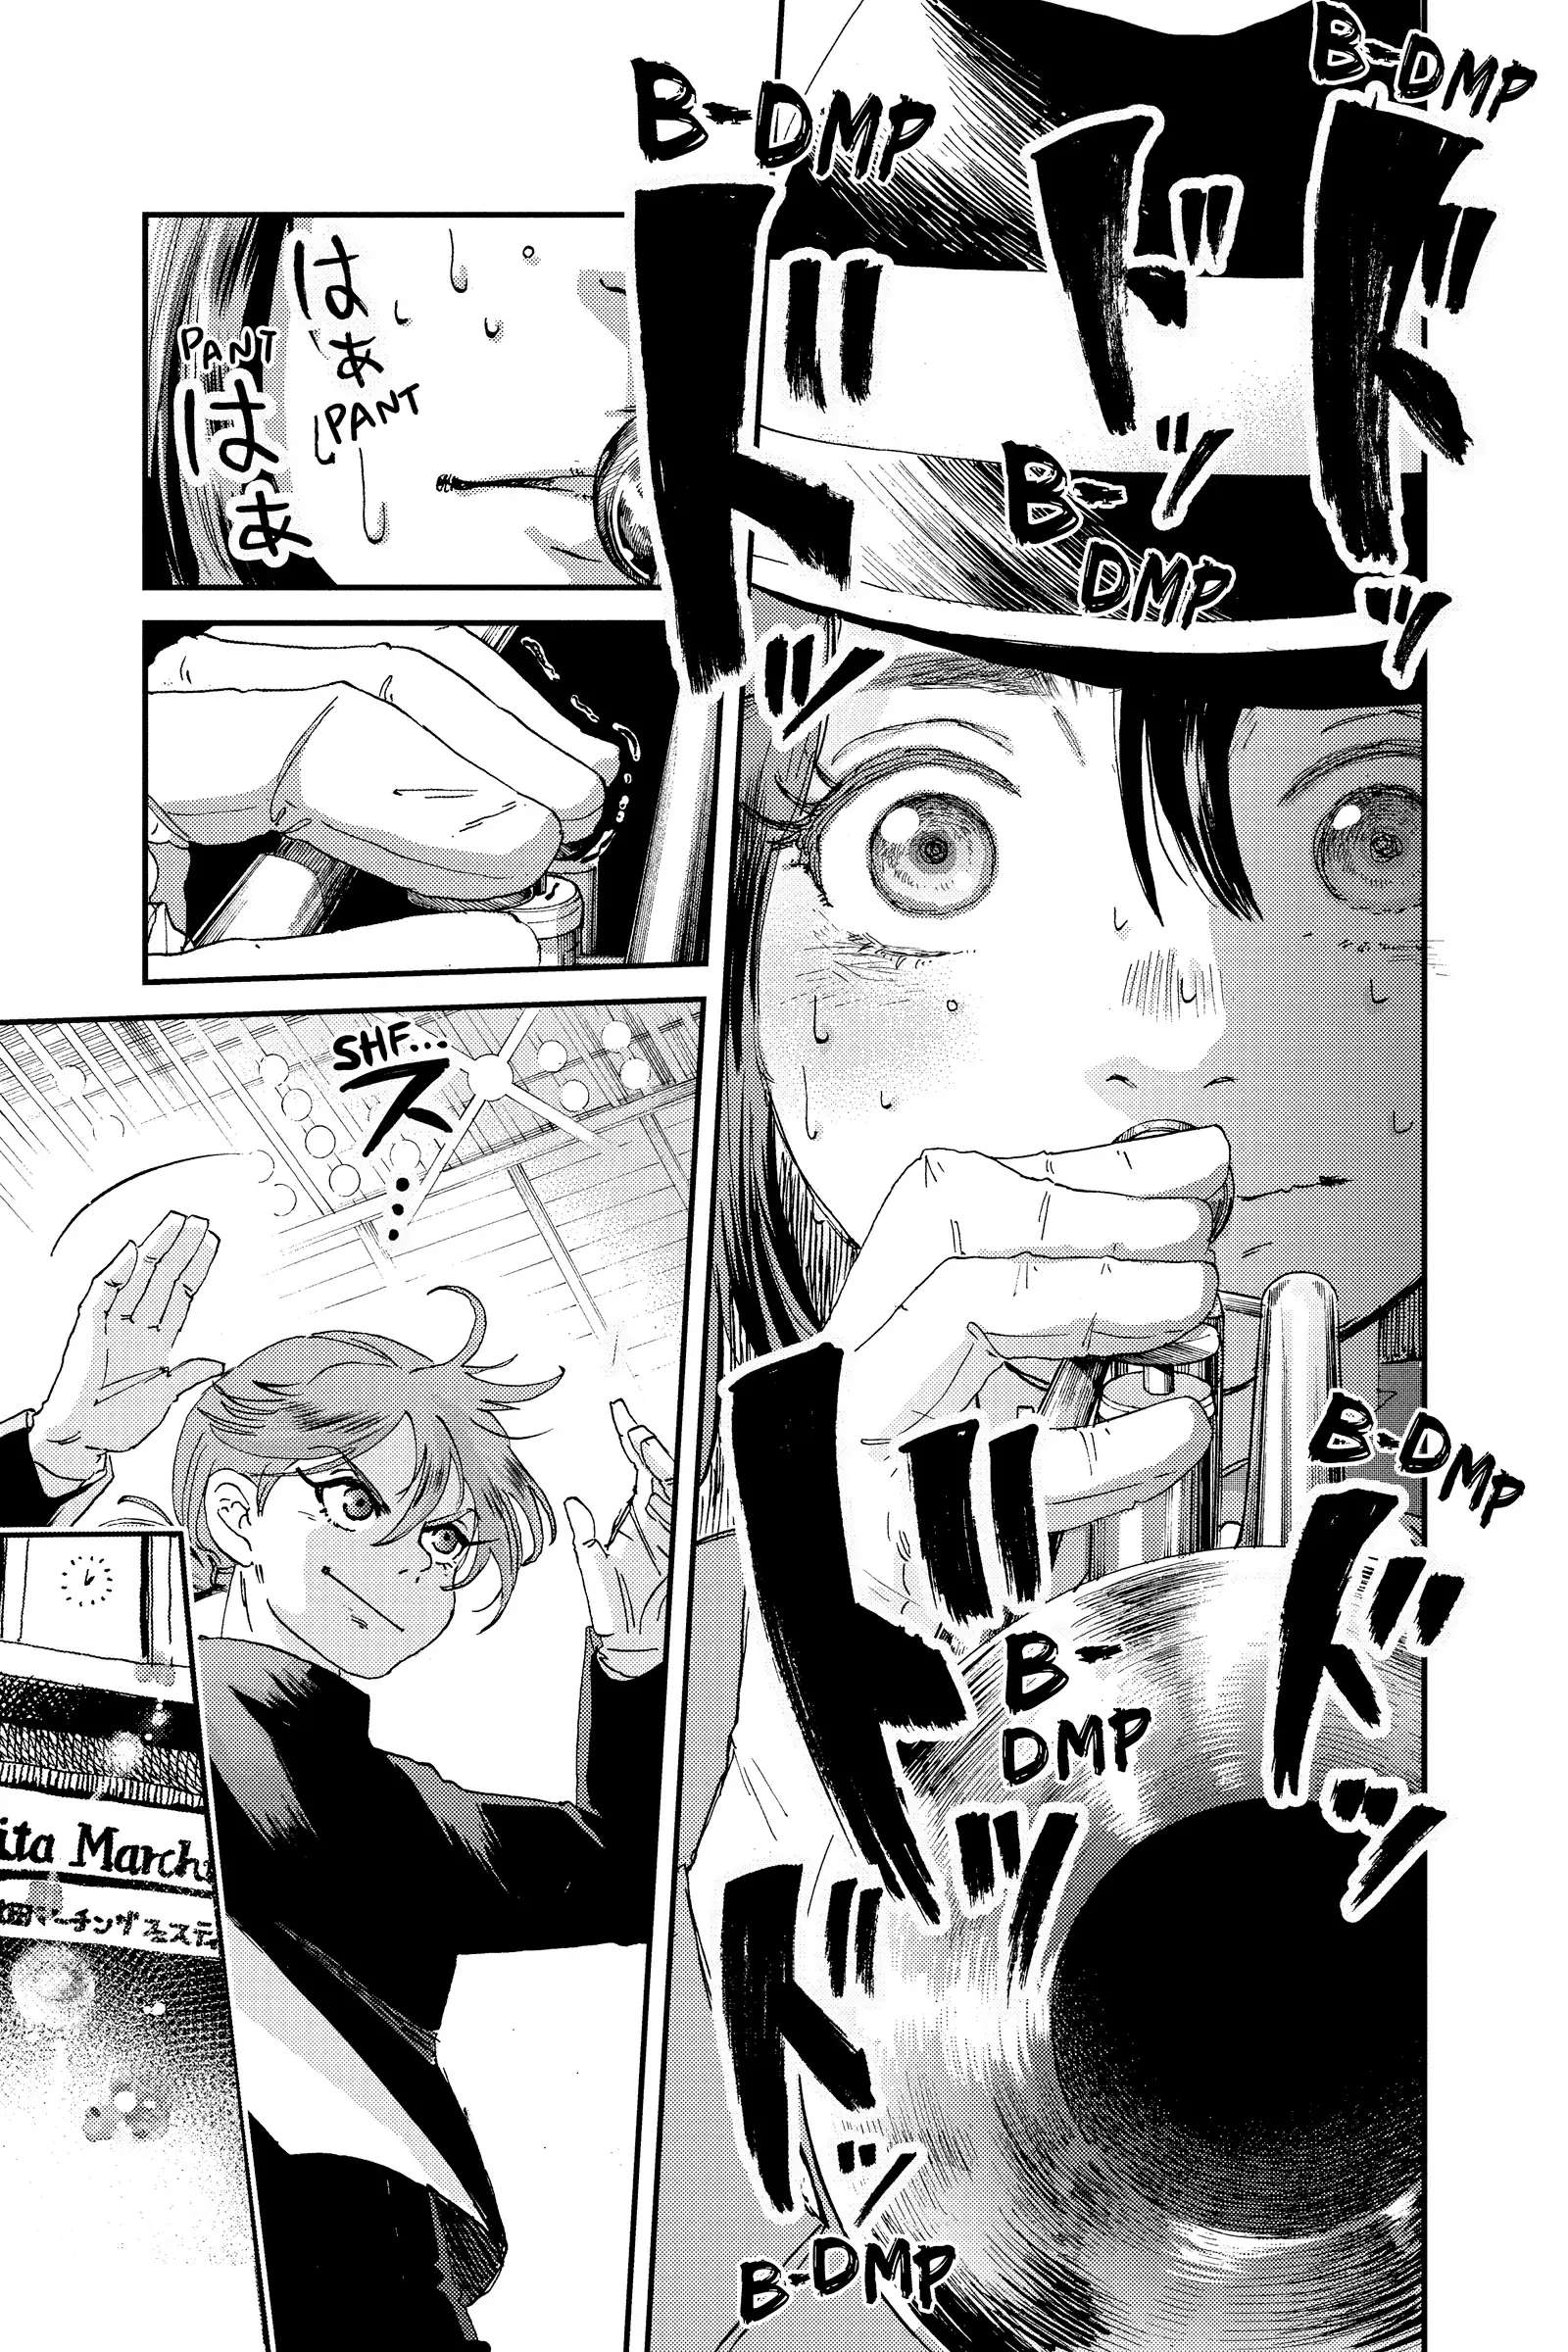 Mikazuki March - chapter 8 - #6